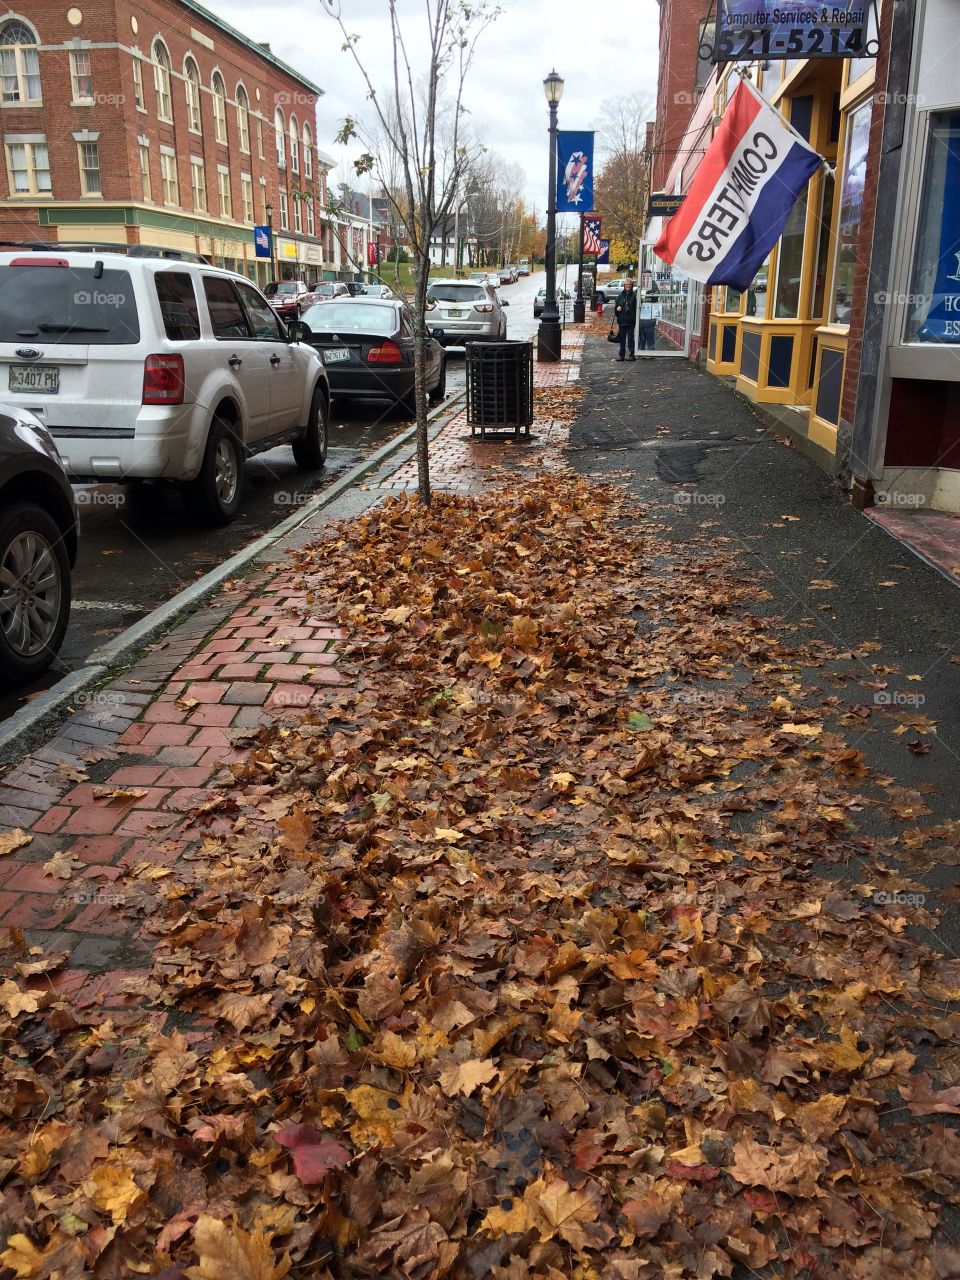 Fallen leafs on the sidewalks in fall